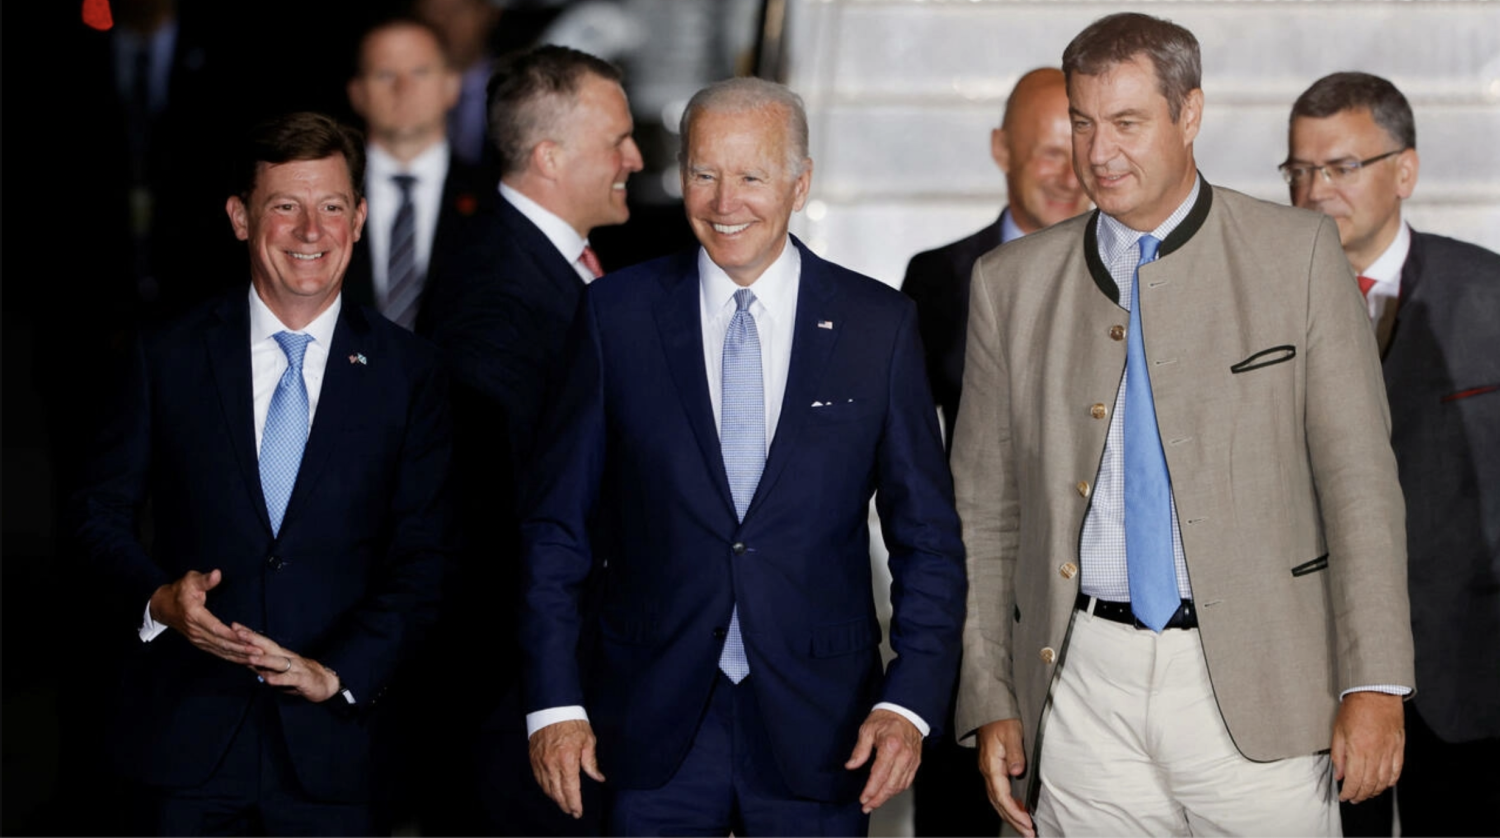 G7 leaders gather for summit amid Ukraine war, stagflation risk